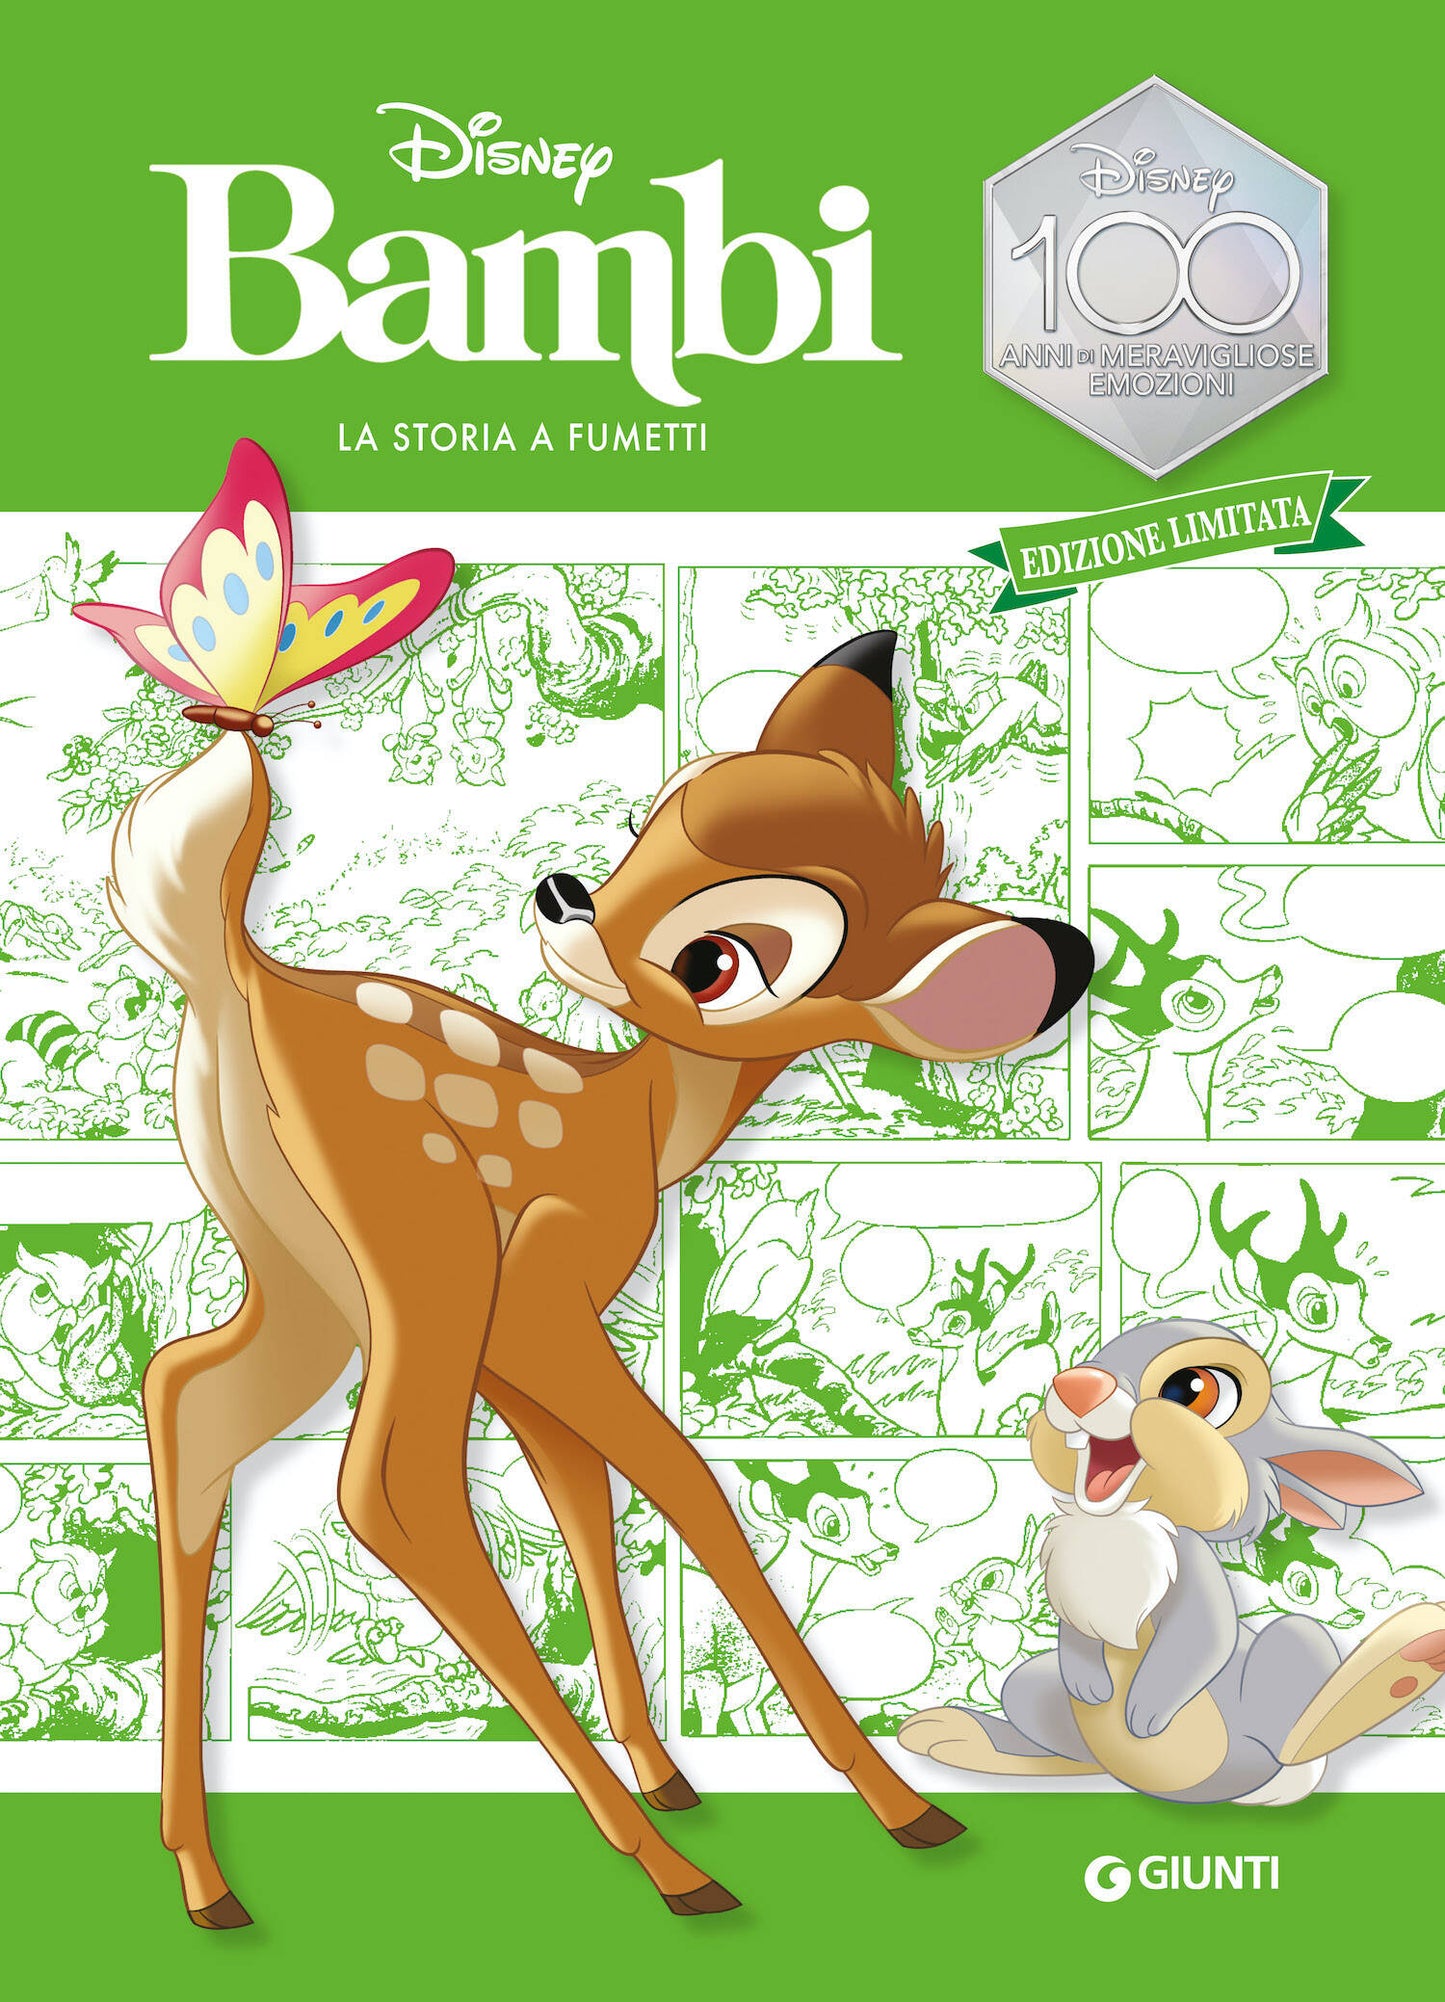 Bambi La storia a fumetti Edizione limitata. Disney 100 Anni di meravigliose emozioni